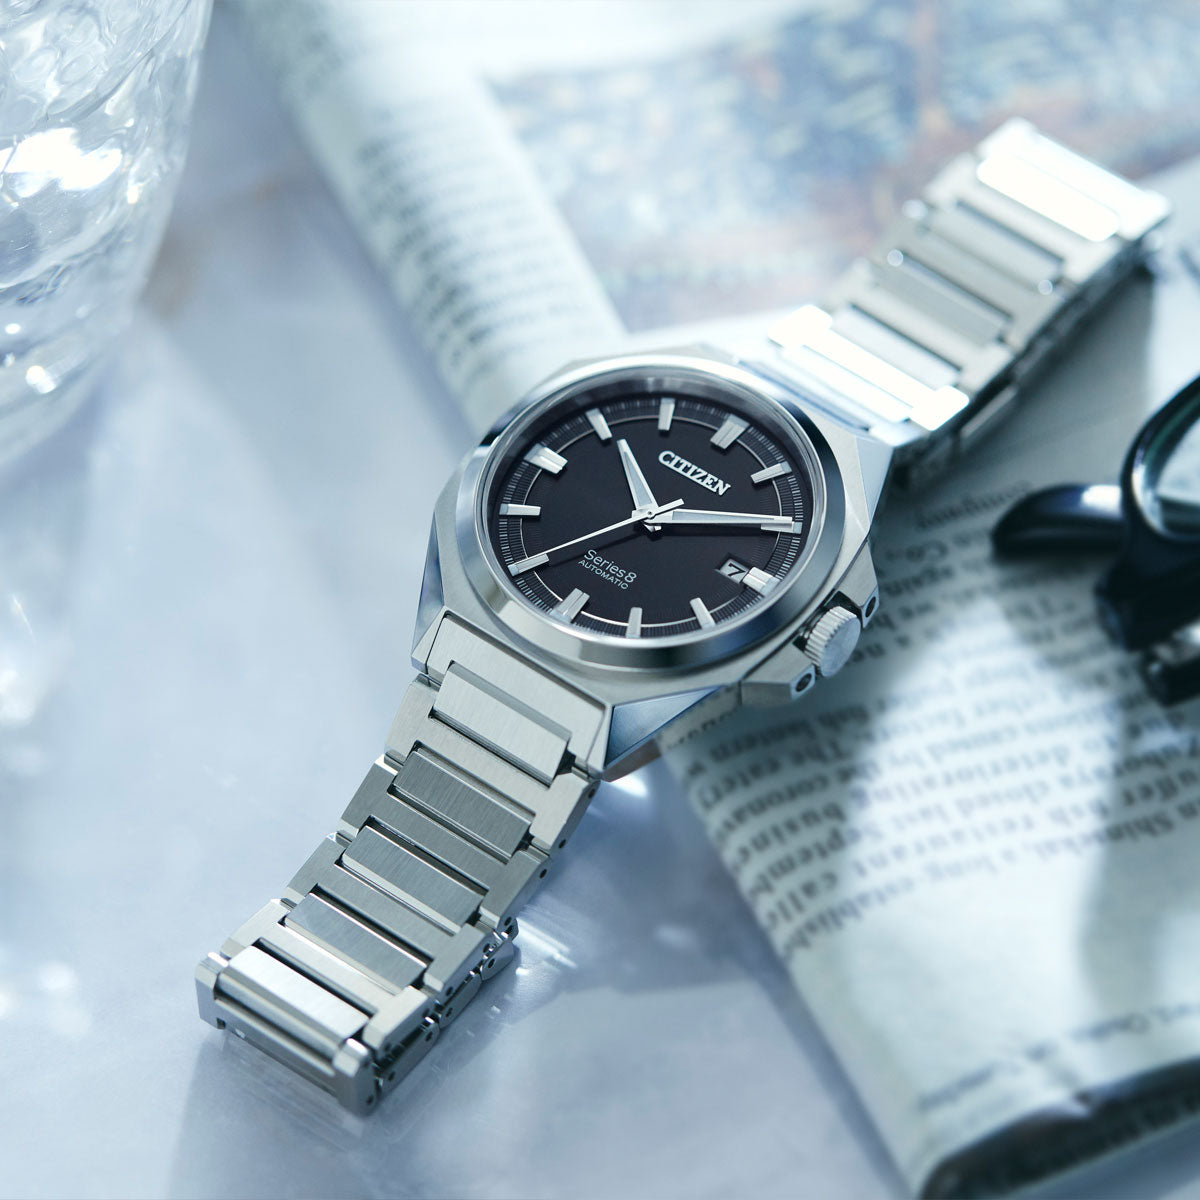 シチズン シリーズエイト CITIZEN Series 8 メカニカル 831 自動巻き 機械式 腕時計 メンズ NB6010-81E